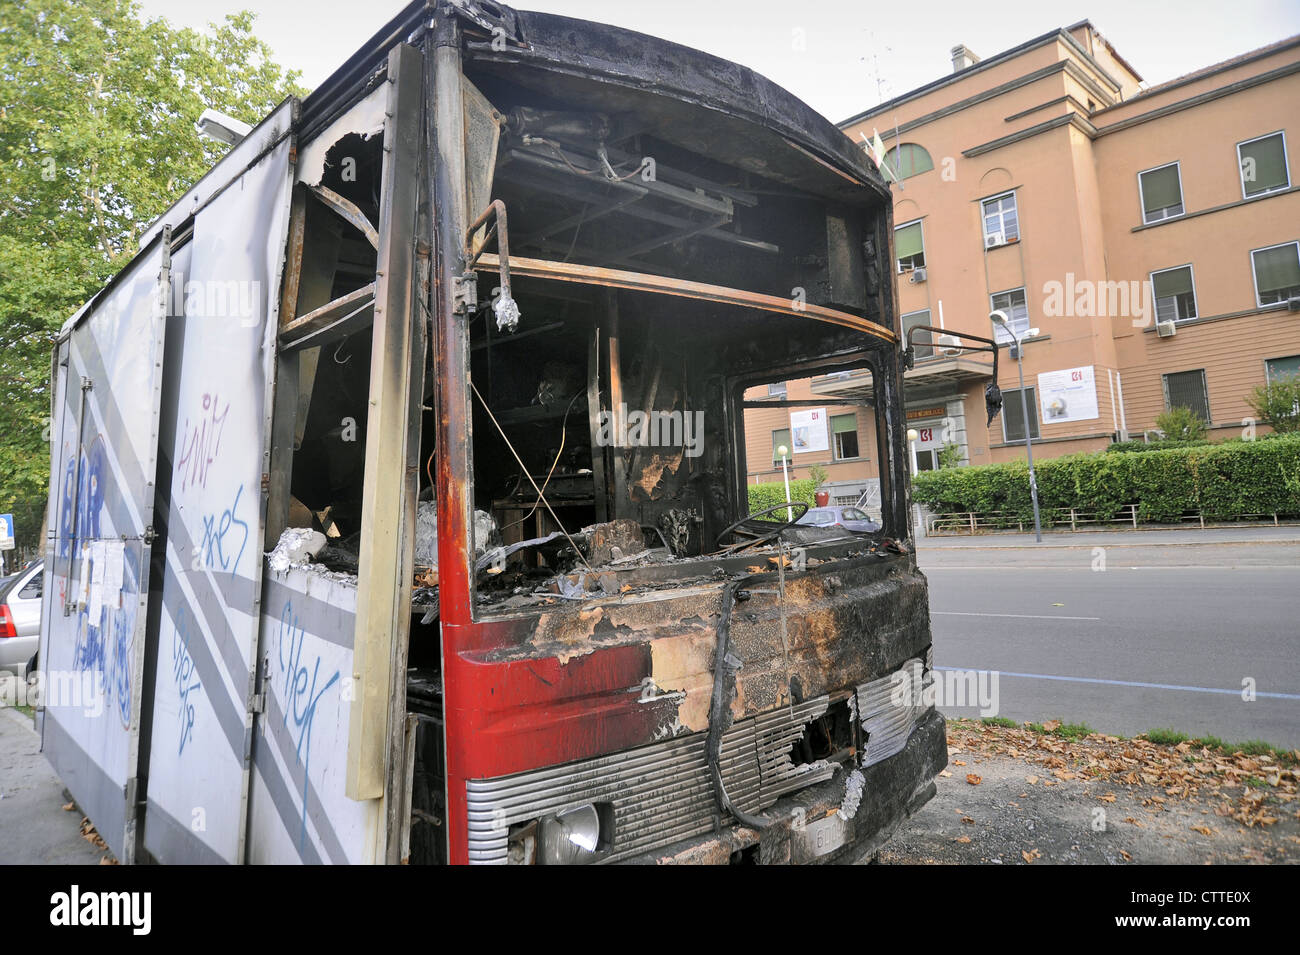 Milán, el camión de alimentos destruidos por incendios provocados porque el propietario se había negado a pagar dinero a cambio de protección a una familia mafiosa Foto de stock